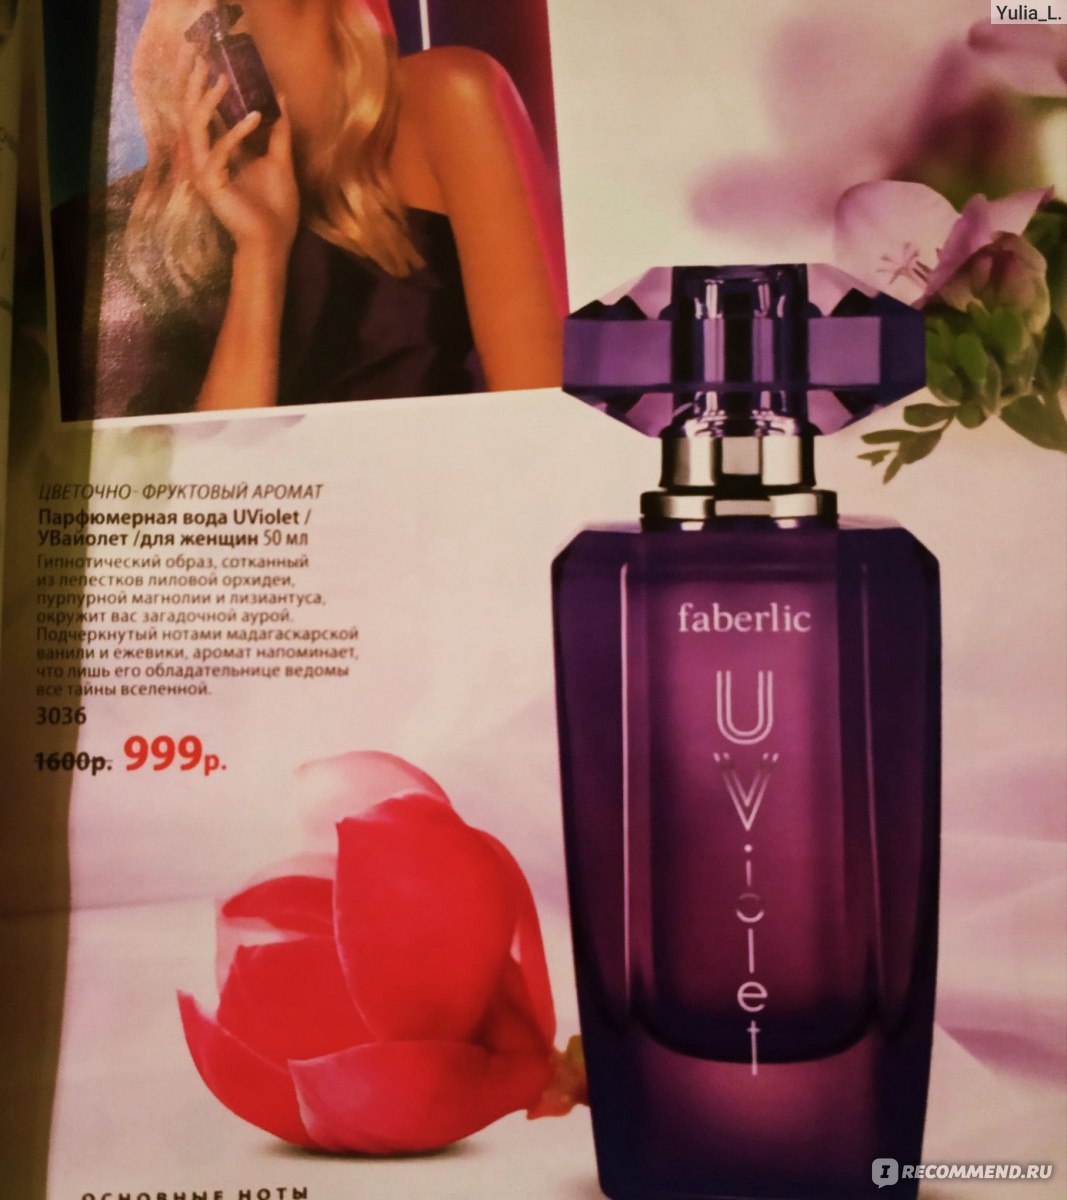 Faberlic Парфюмерная вода для женщин U-Violet фото